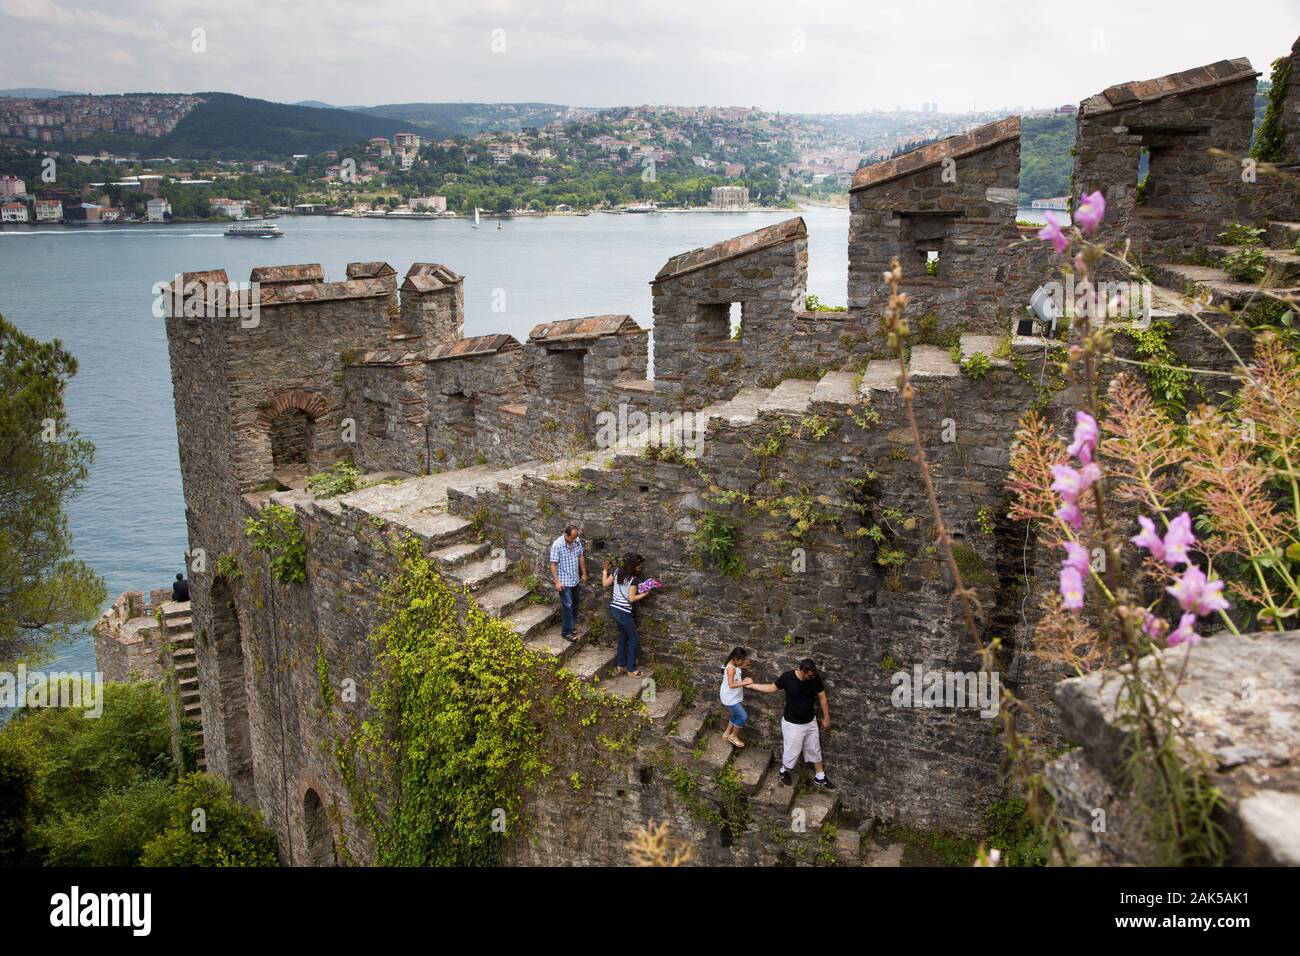 Stadtteil Sariyer: osmanische Festungsanlage Rumeli Hisari auf der europaeischen Seite des Bosporus, Istanbul | usage worldwide Stock Photo